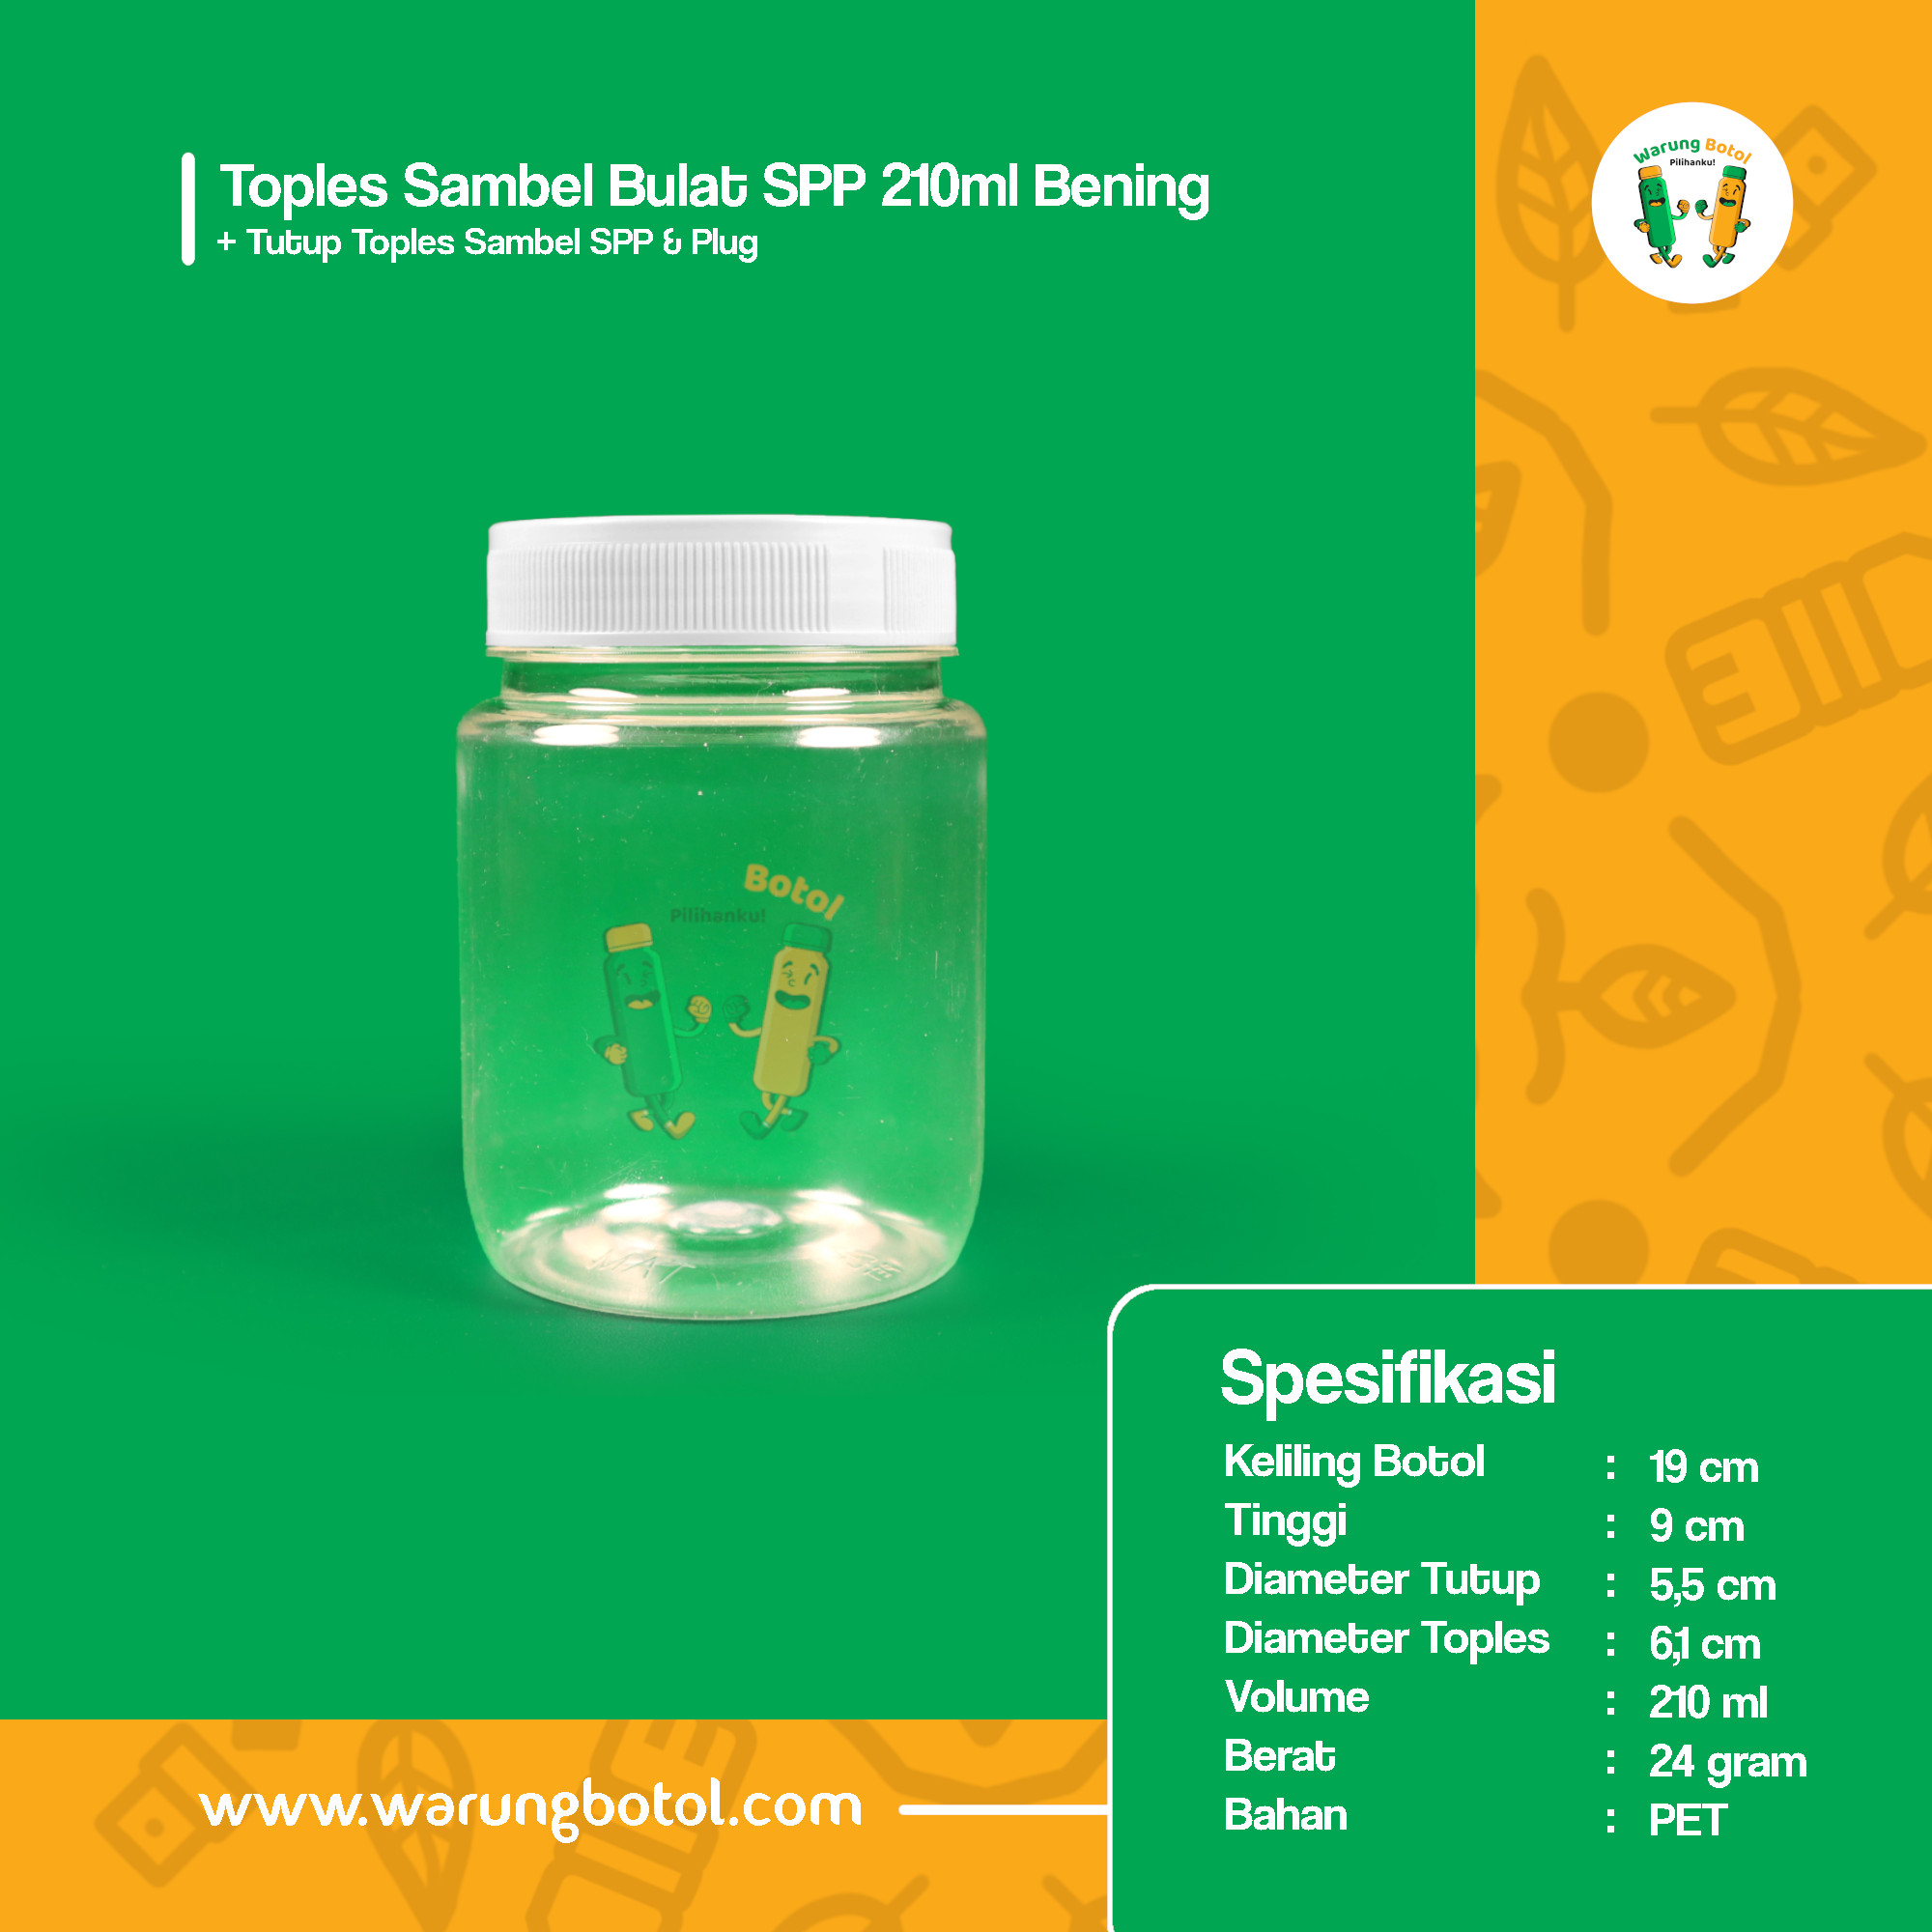 distributor toko jual toples botol plastik sambal 210ml murah untuk sambel terdekat di bandung, jakarta, bekasi, bogor